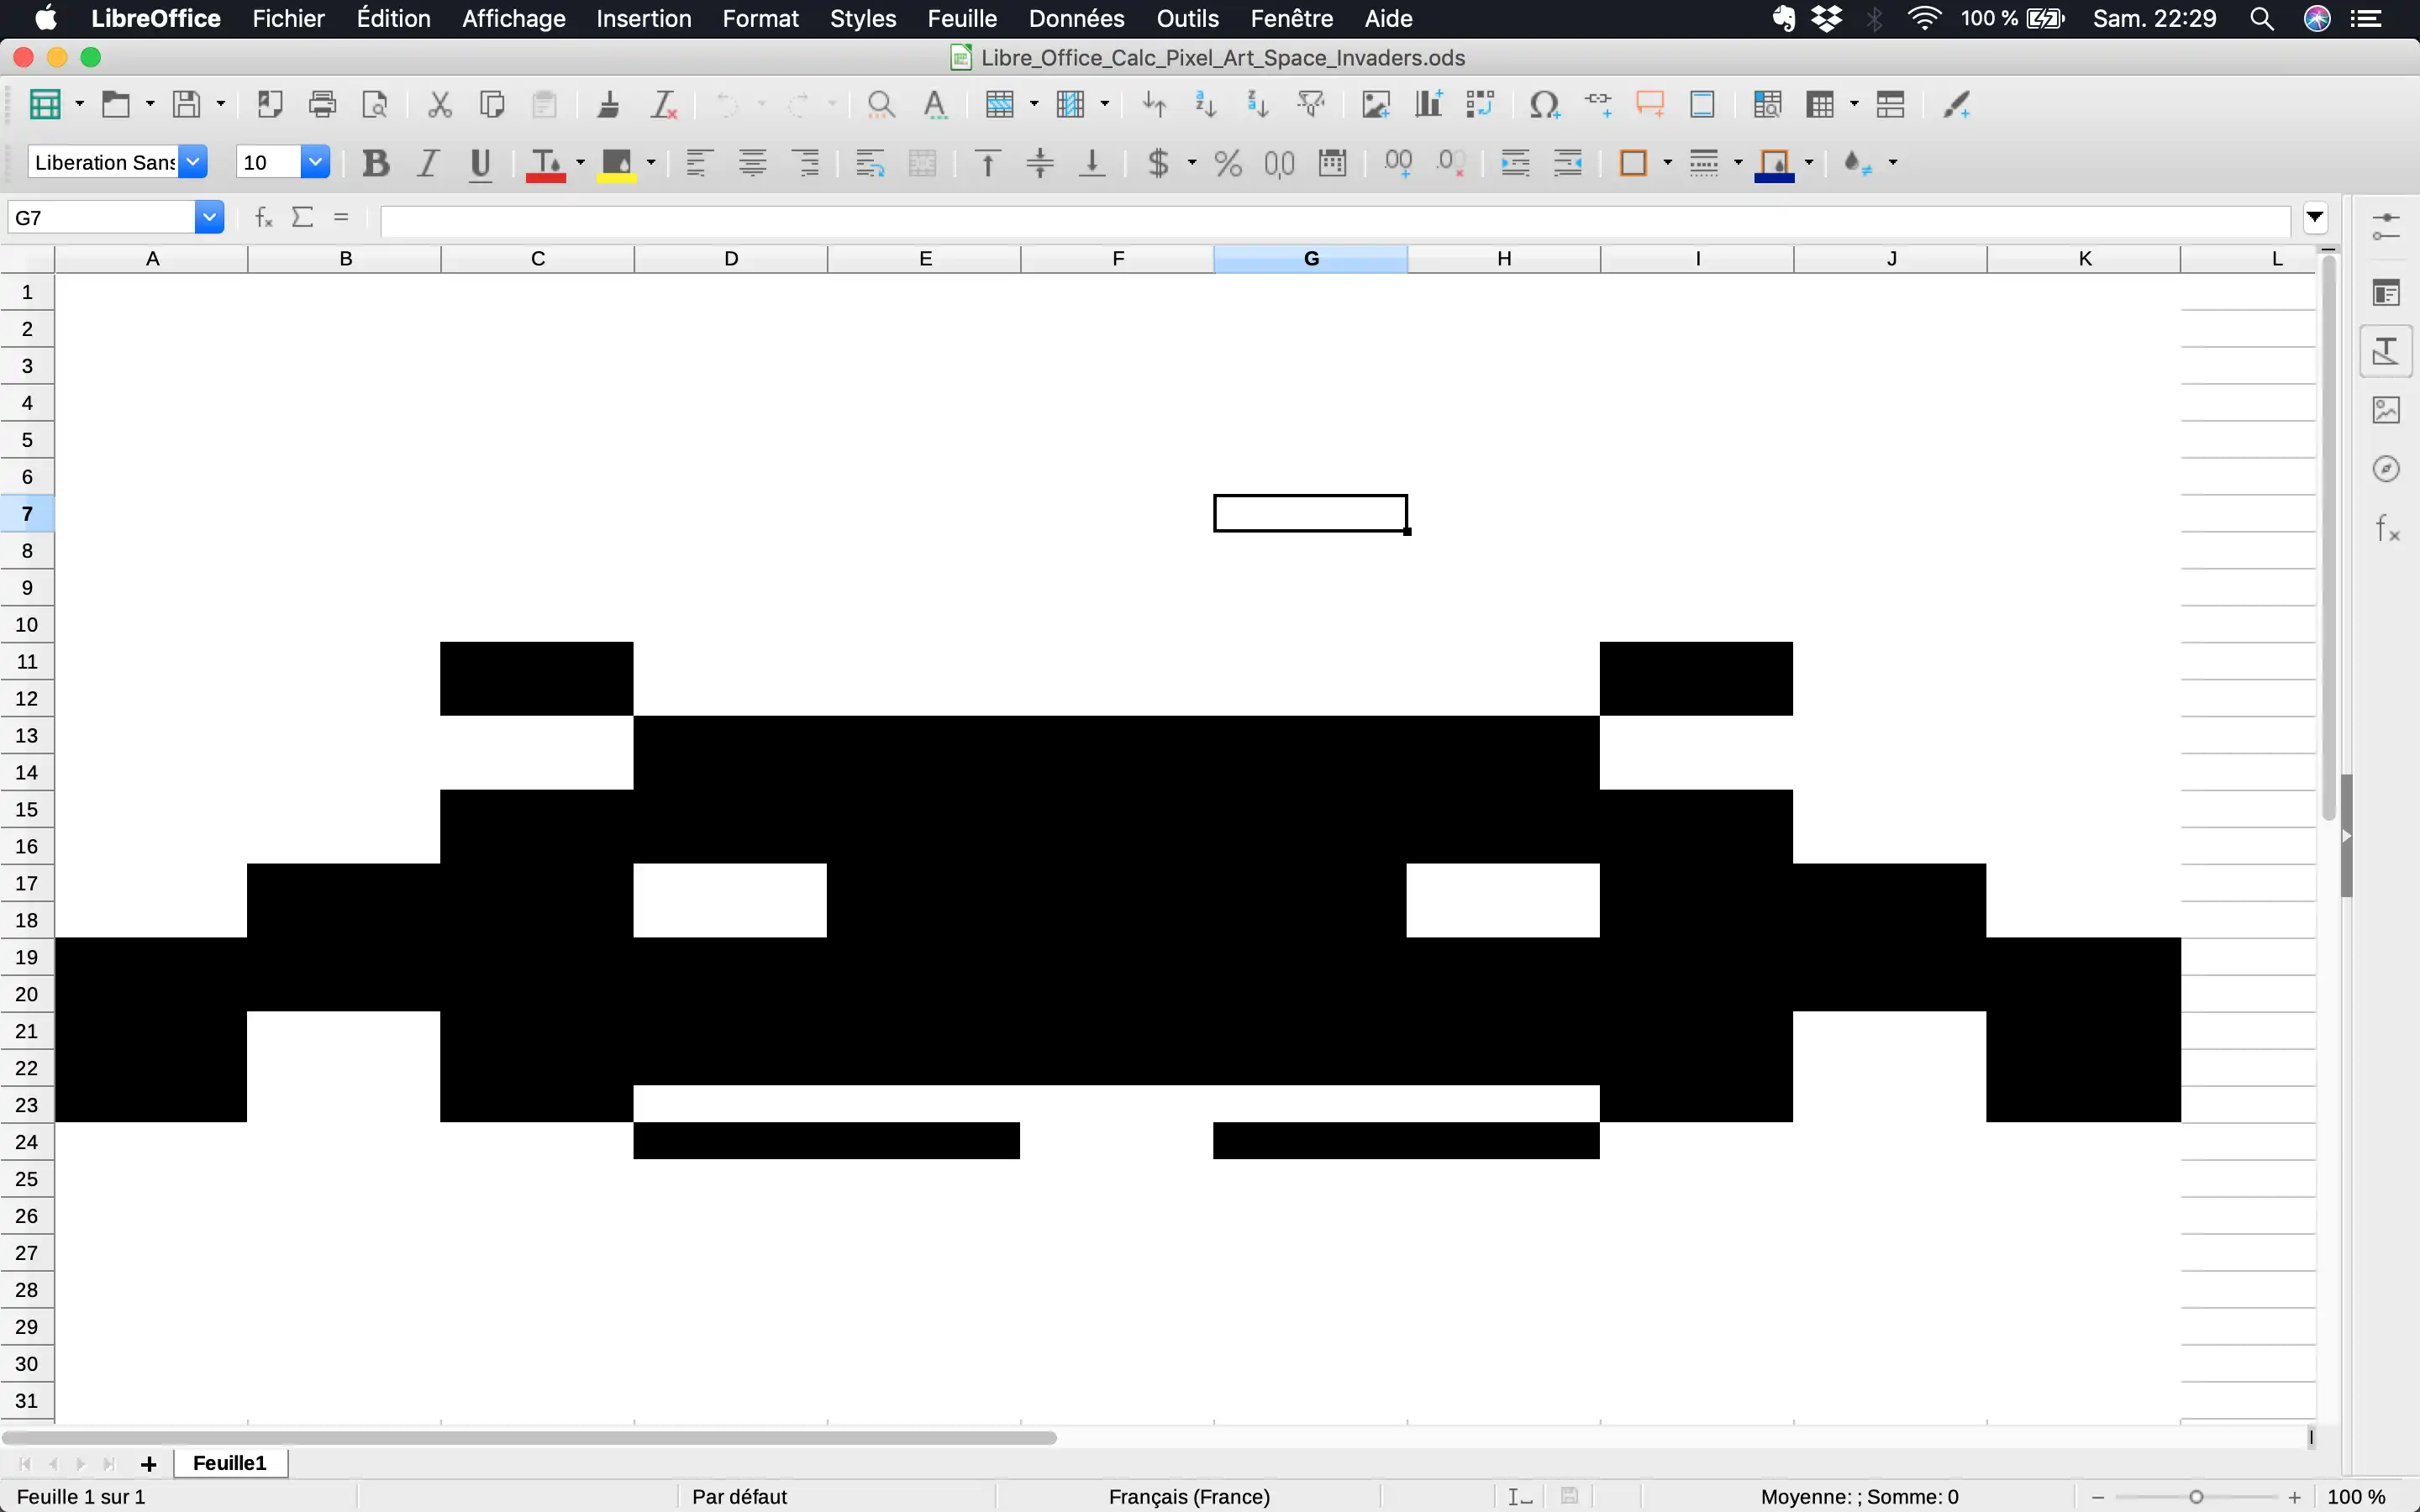 ابزار وب یا برنامه وب Libre Office Calc Pixel Art را دانلود کنید